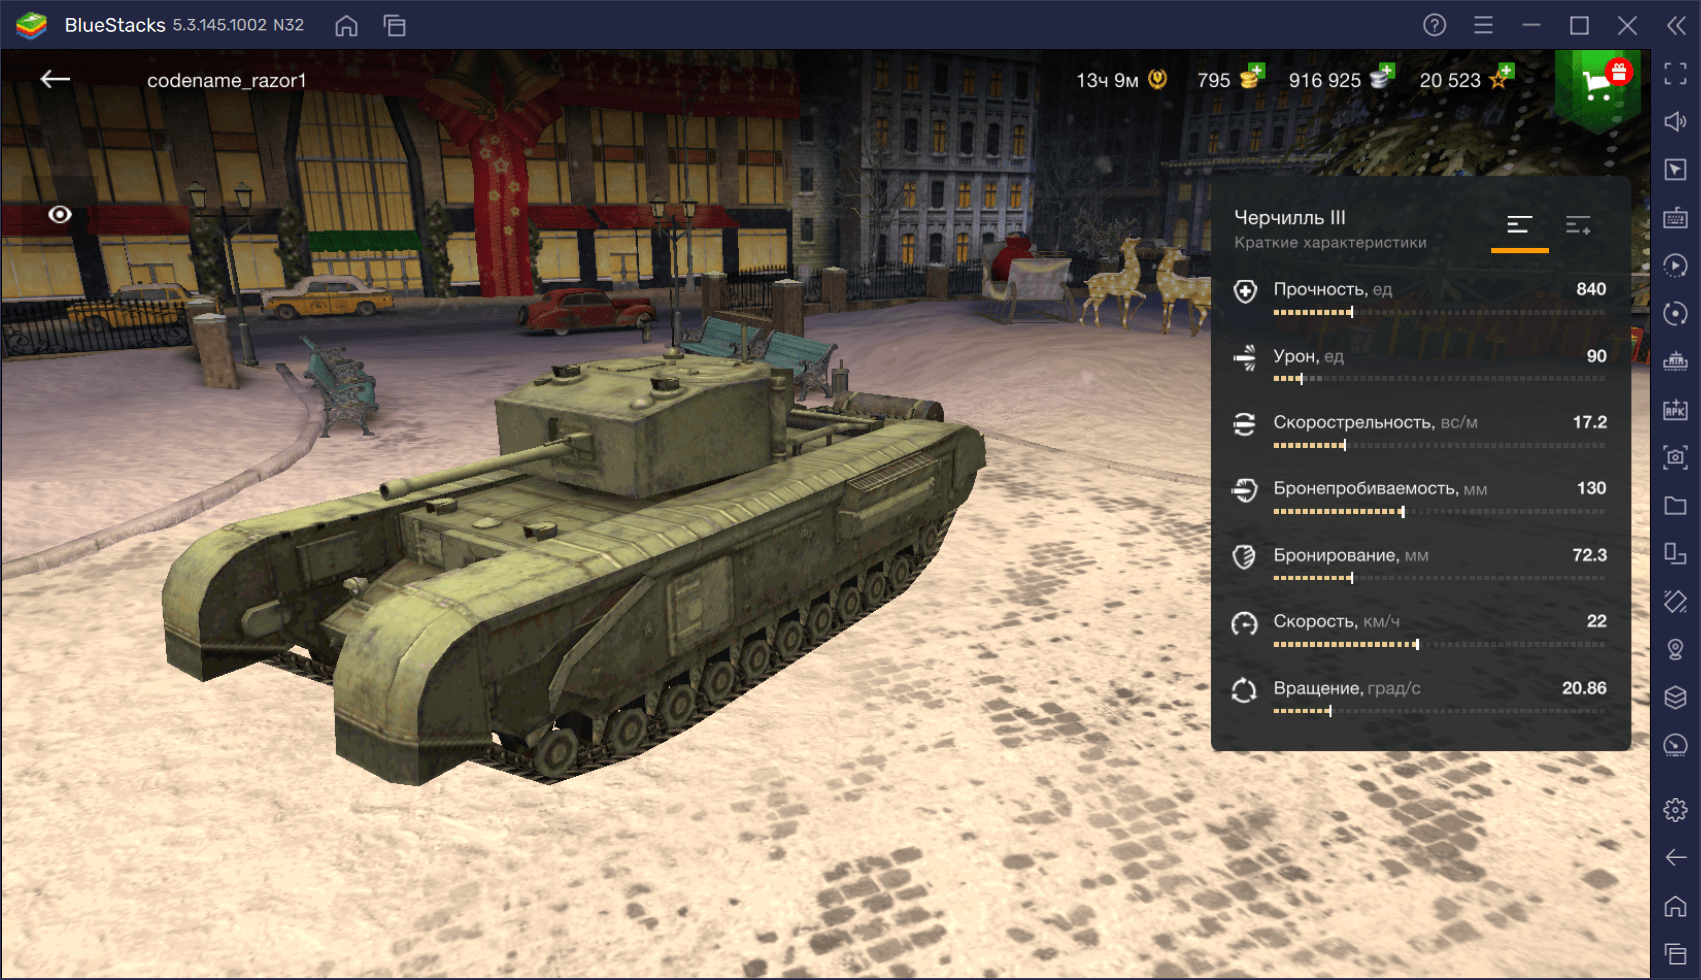 Подробный обзор тяжелого танка Churchill III в World of Tanks: Blitz. Характеристики, преимущества и тактики игры